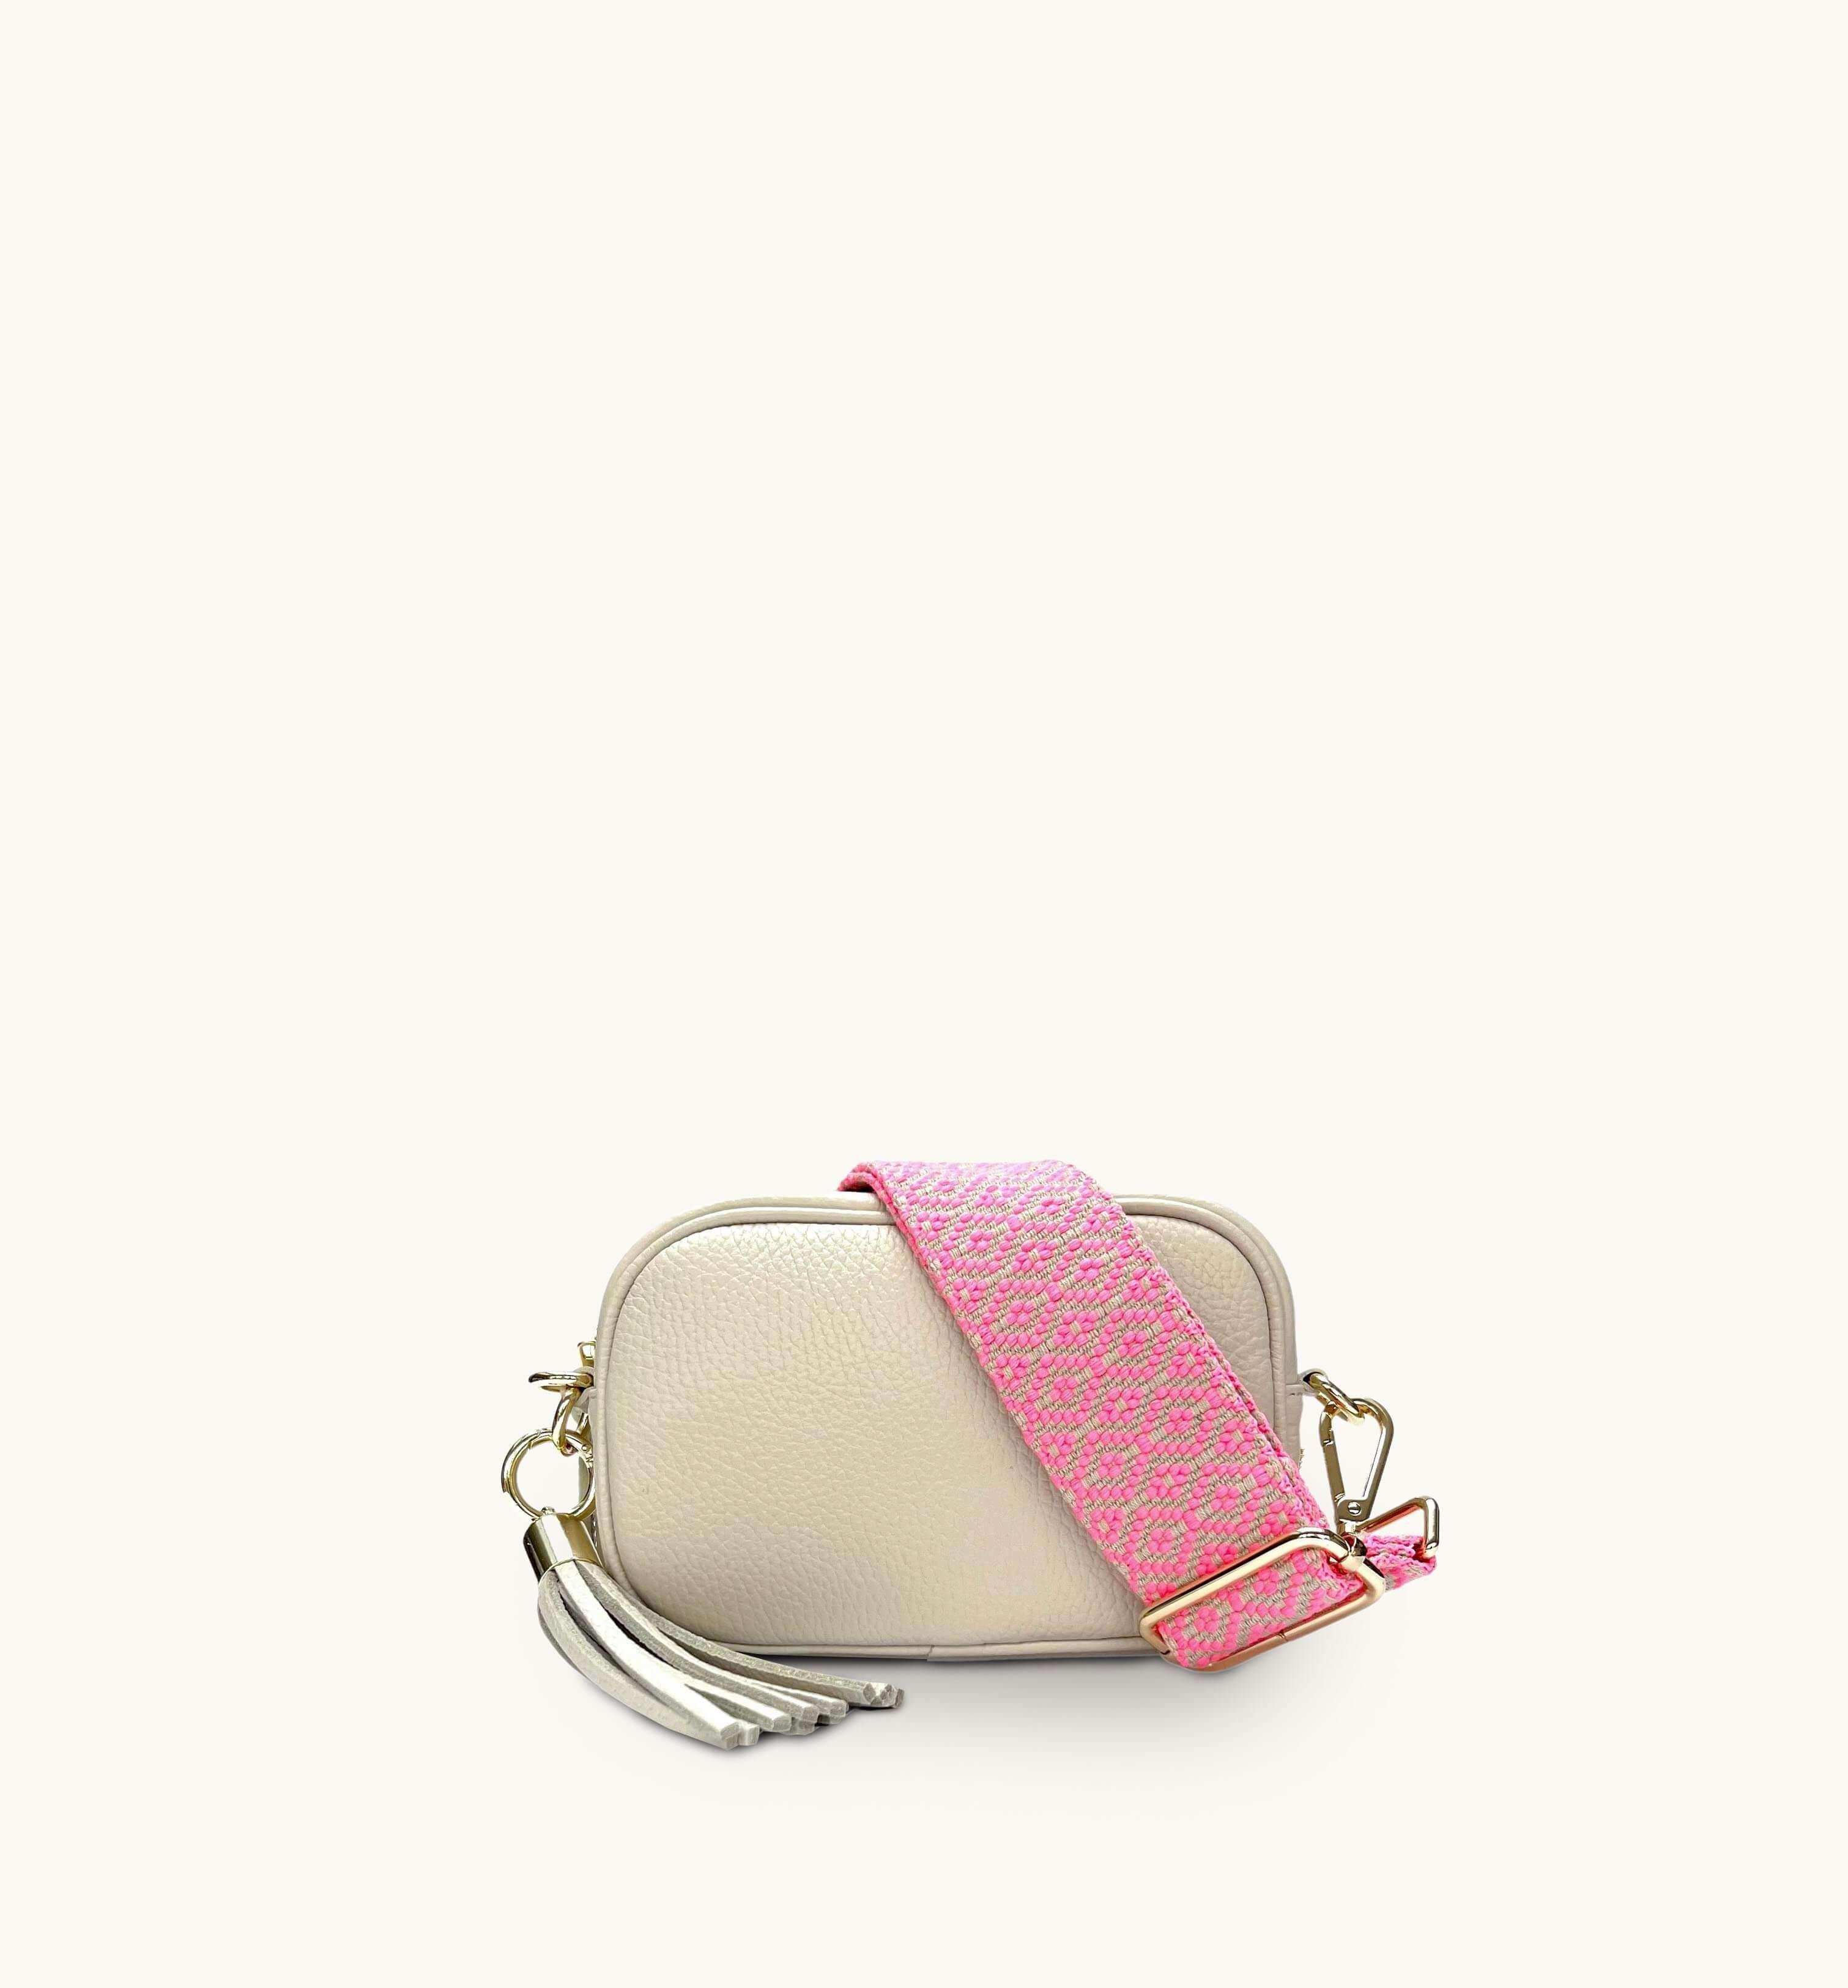 цена Кожаная сумка для телефона Mini с кисточками и неоново-розовым ремешком с вышивкой крестиком Apatchy London, бежевый